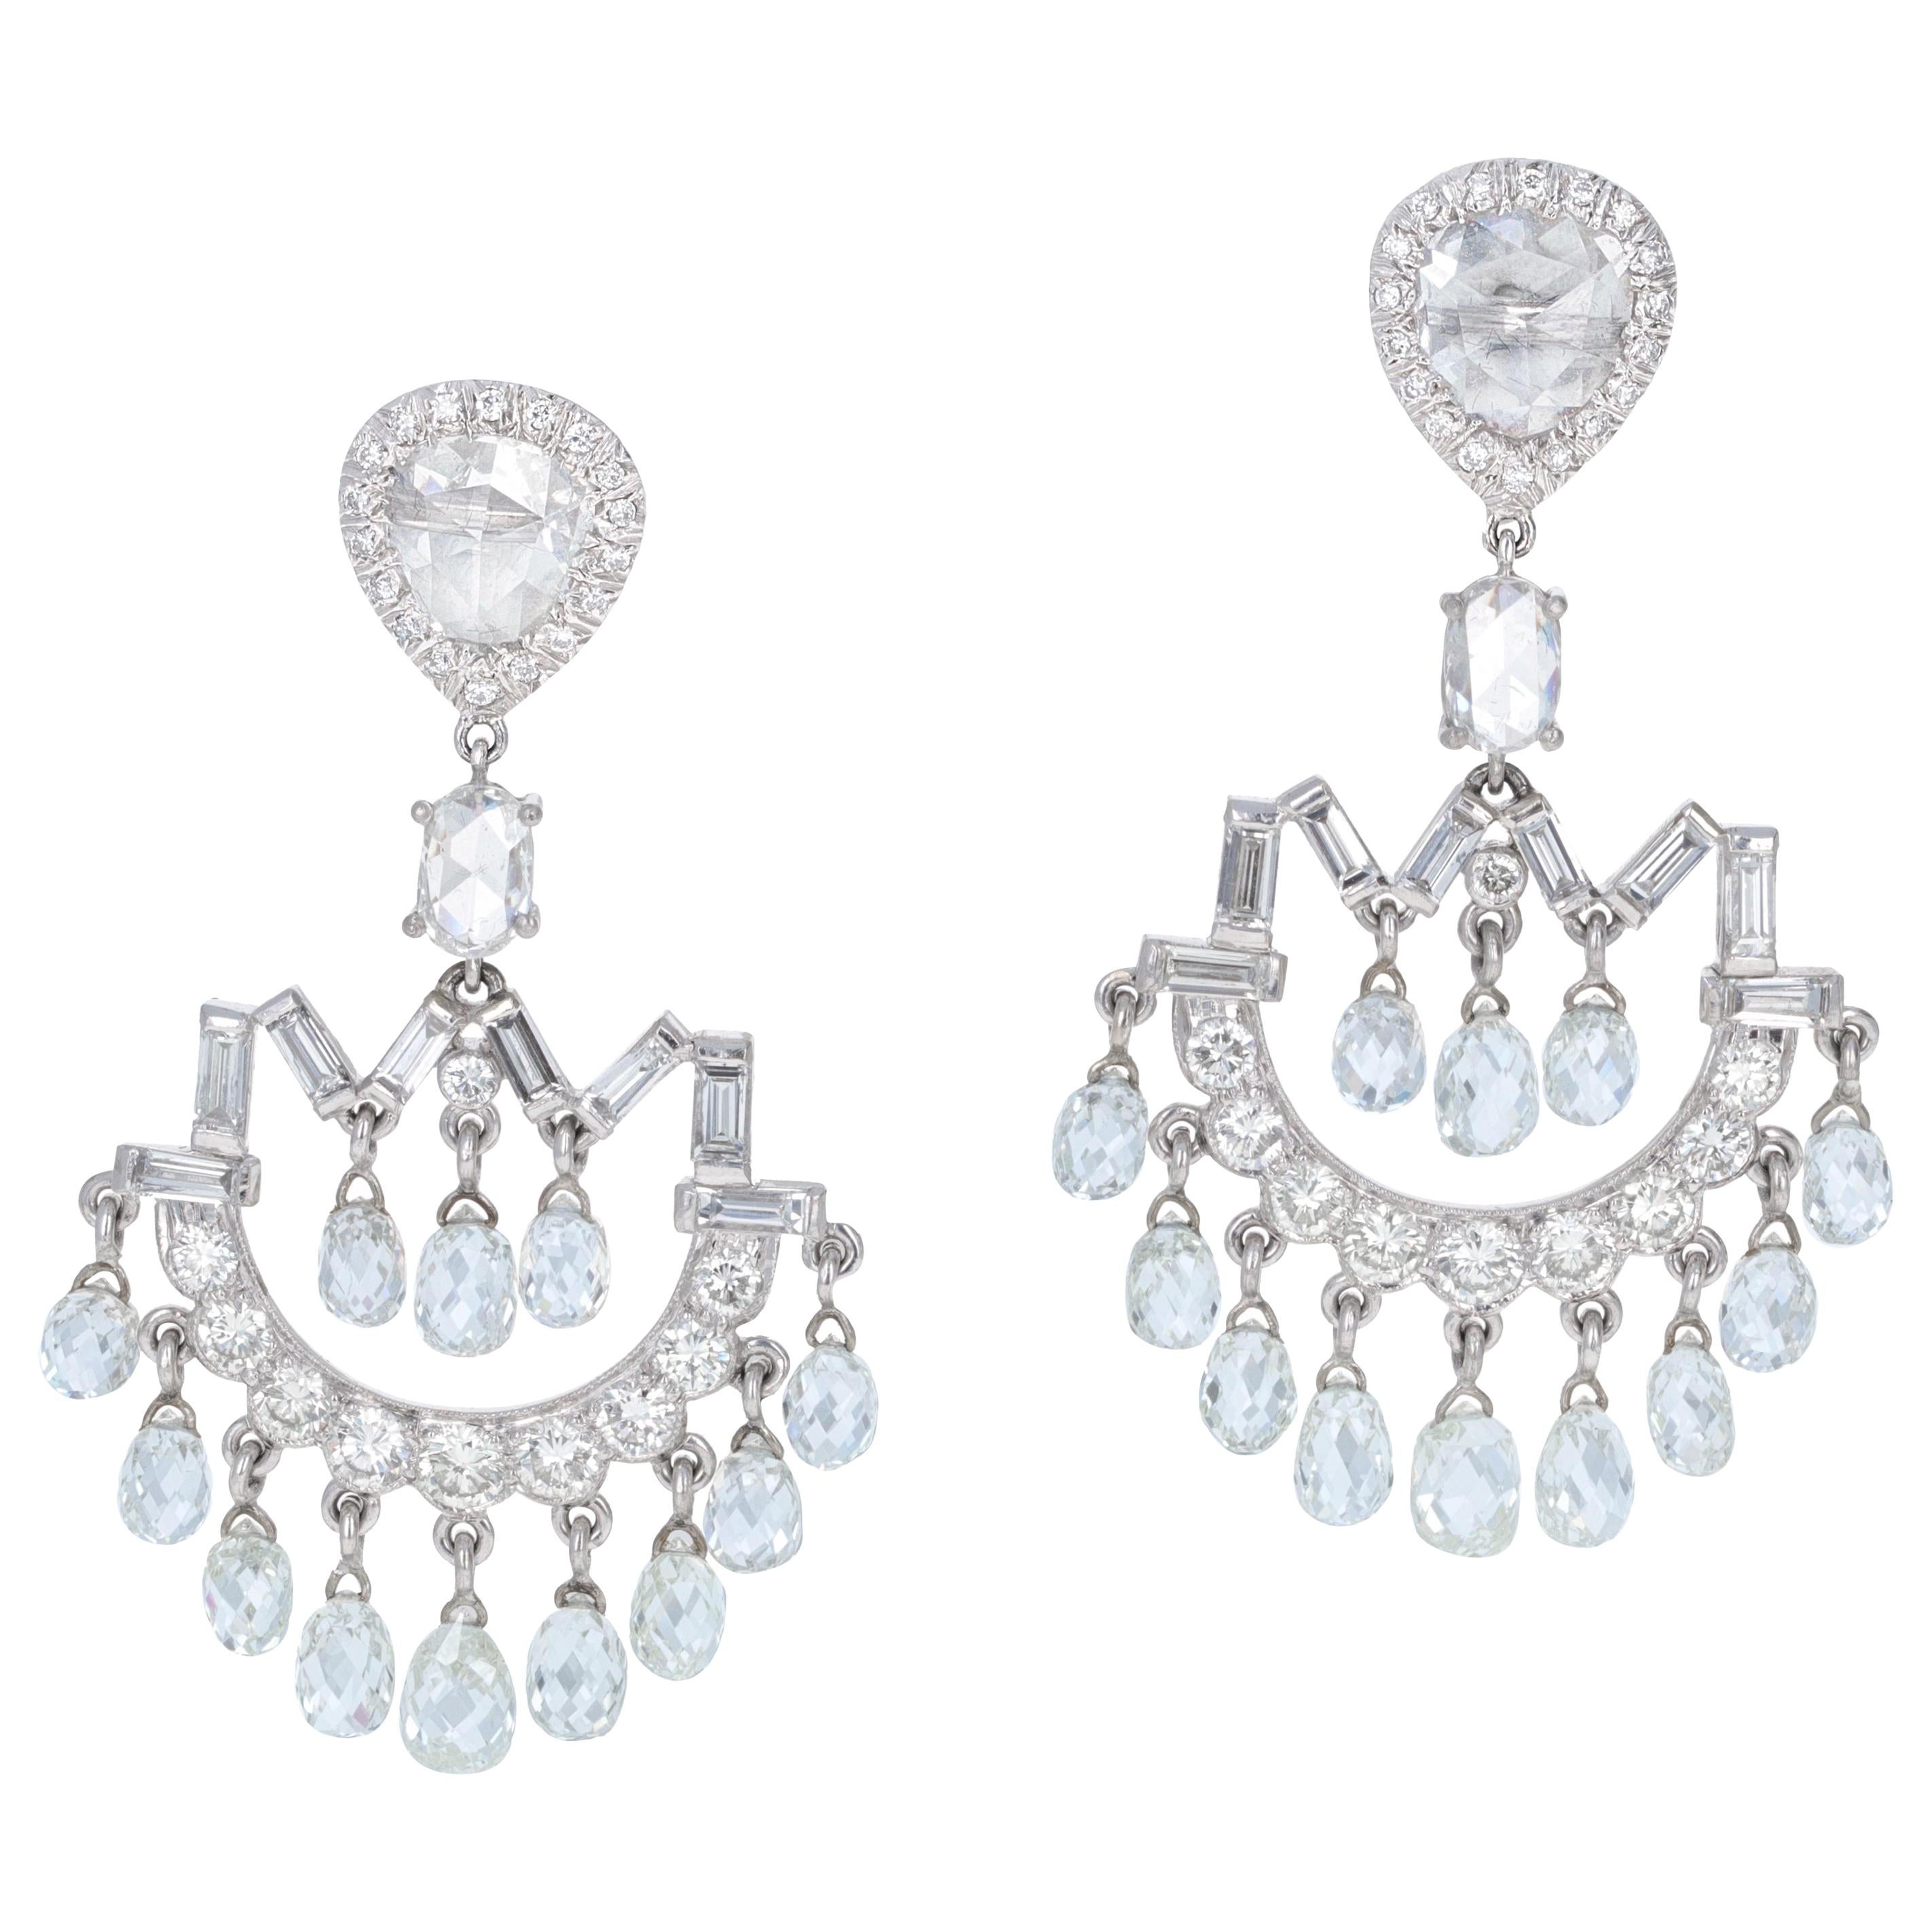 Art Deco inspirierte Diamant-Briolette-Kronleuchter-Ohrringe